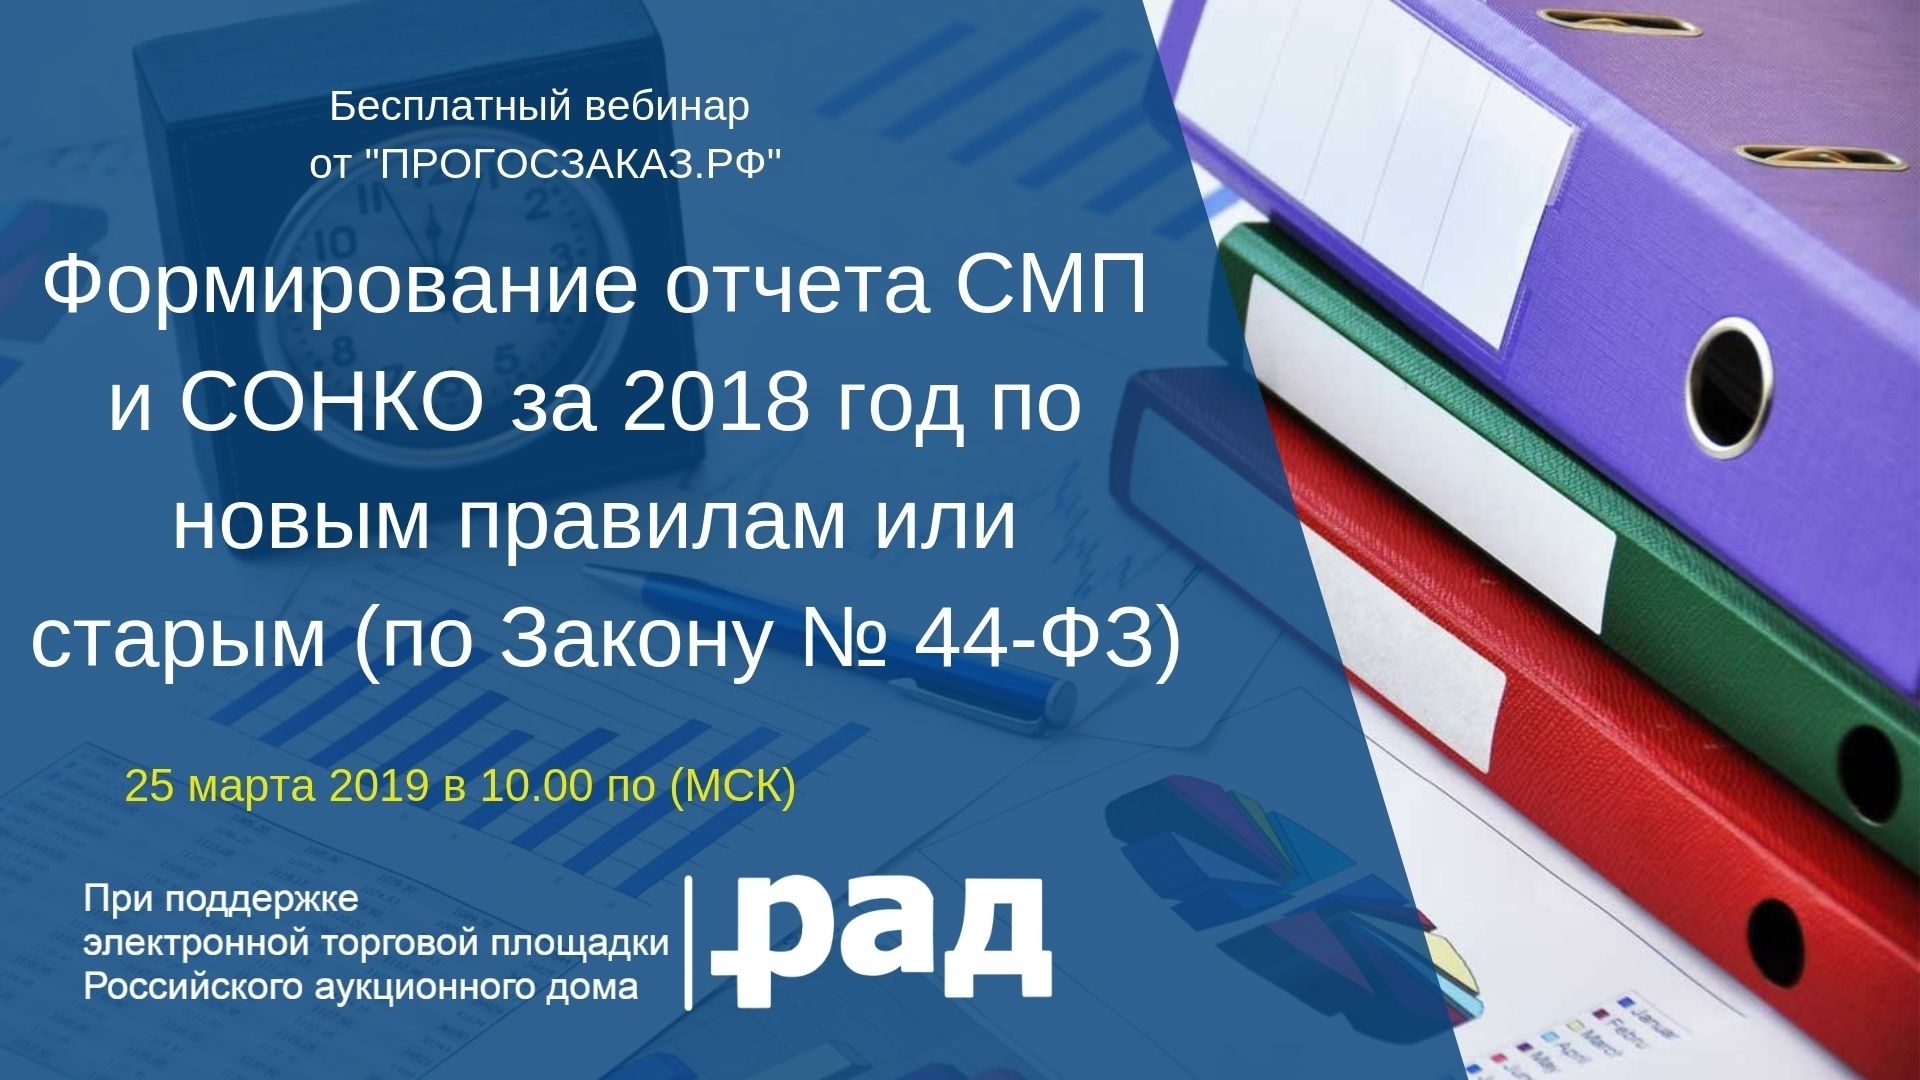 25 марта 2019 года в 10:00 по МСК состоится вебинар на тему «Формирование отчета СМП и СОНКО за 2018 год по новым правилам или старым (по Закону № 44-ФЗ)